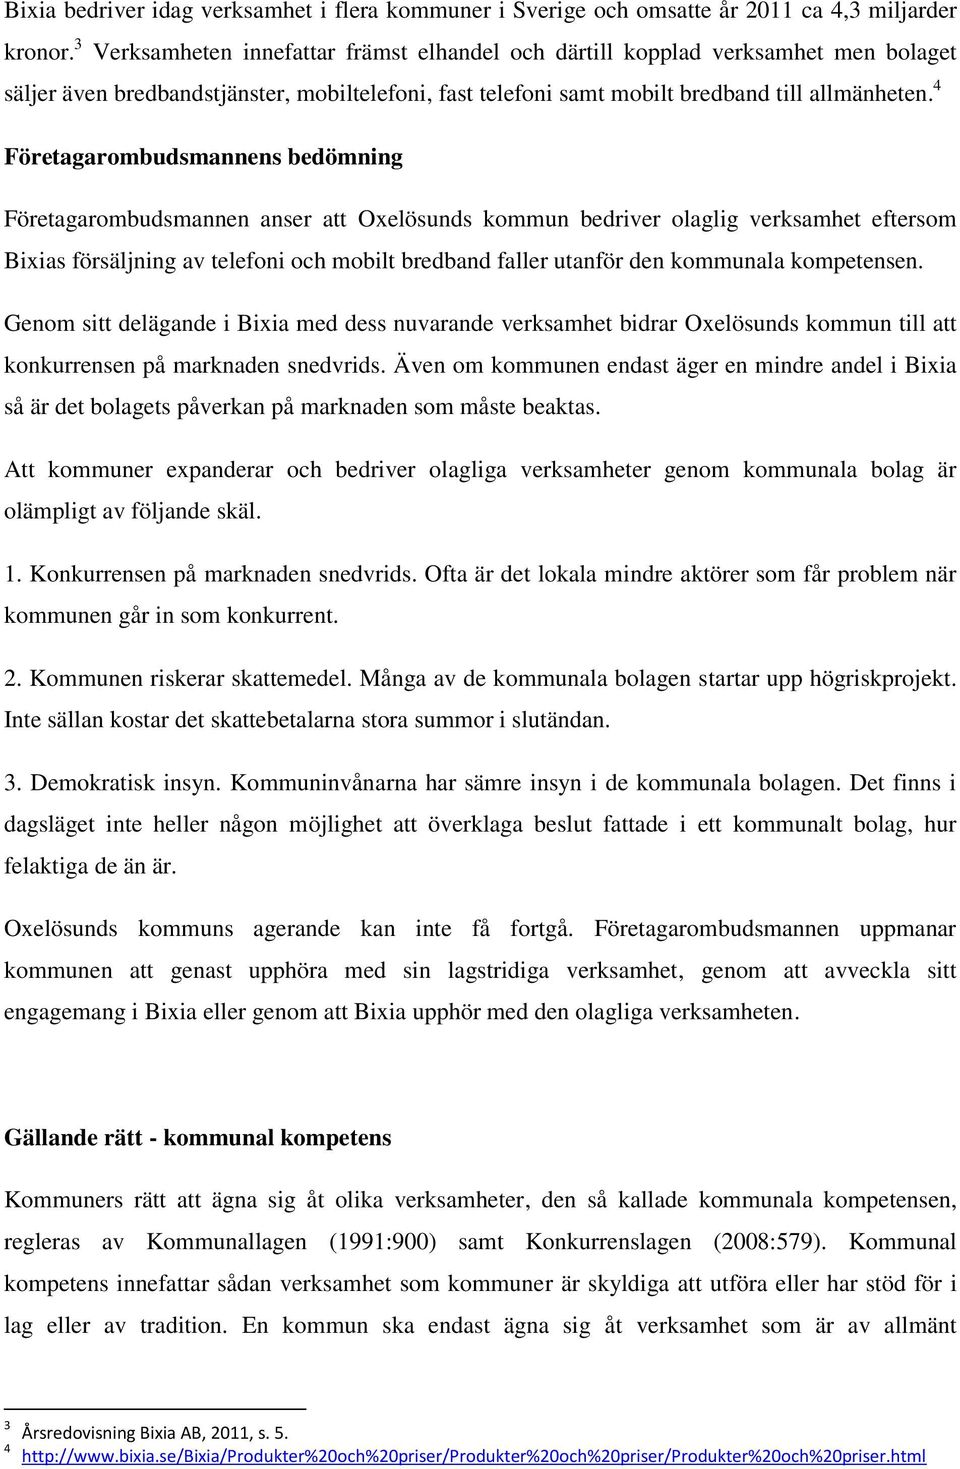 4 Företagarombudsmannens bedömning Företagarombudsmannen anser att Oxelösunds kommun bedriver olaglig verksamhet eftersom Bixias försäljning av telefoni och mobilt bredband faller utanför den